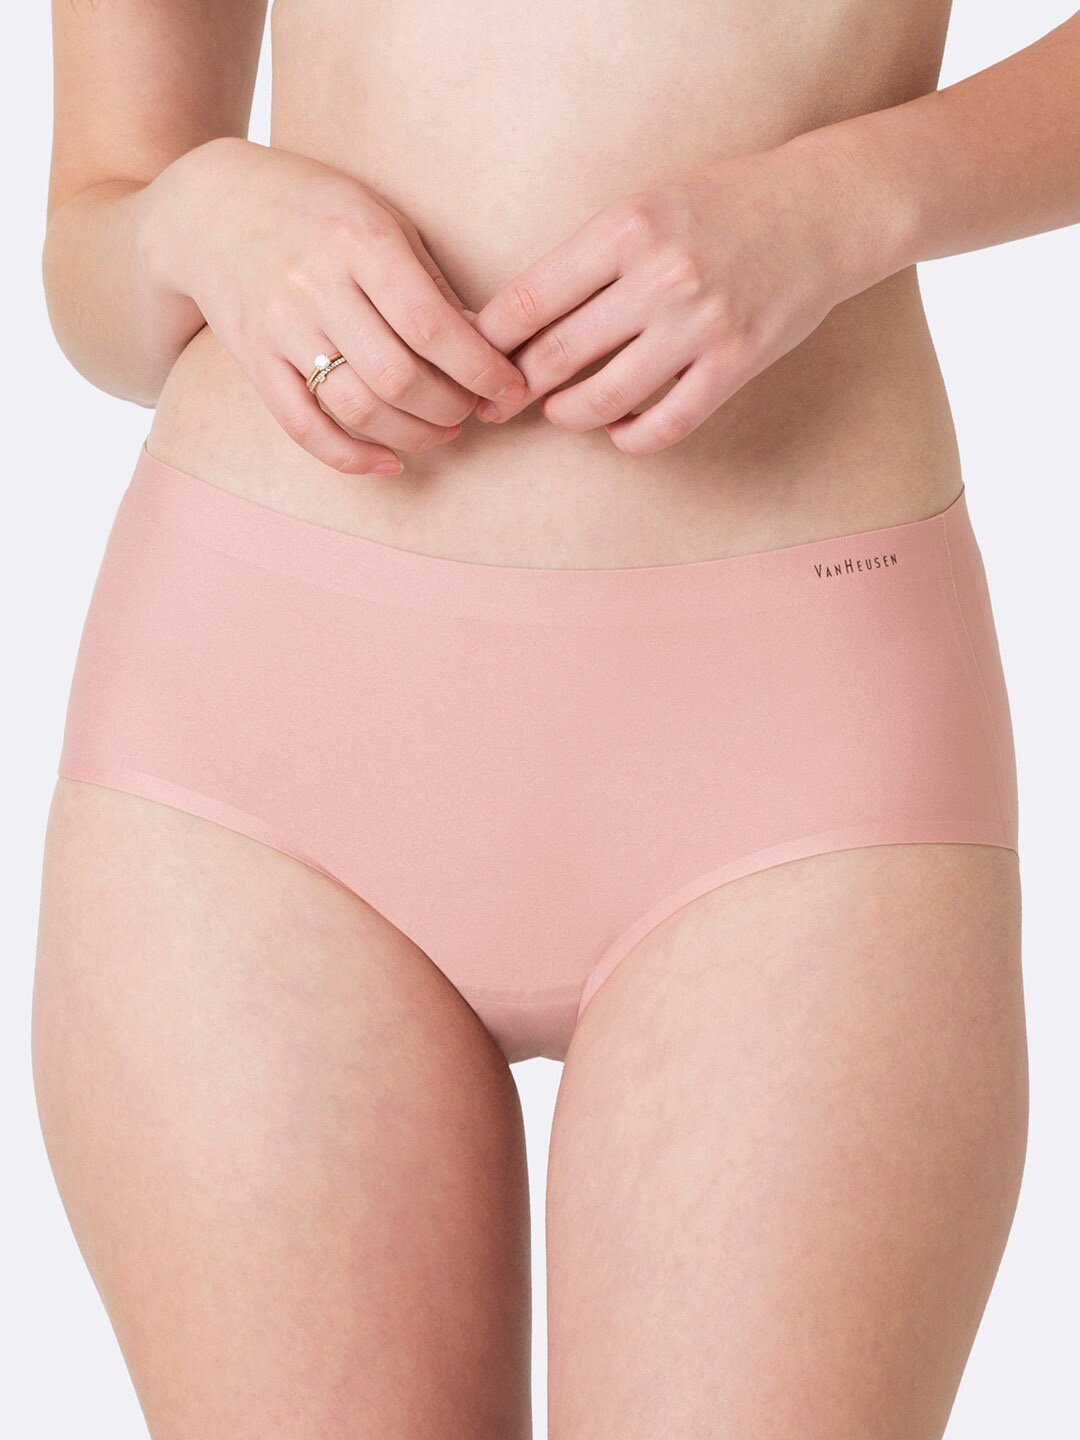 Buy Van Heusen Women No Visible Panty Line Easy Stain Release